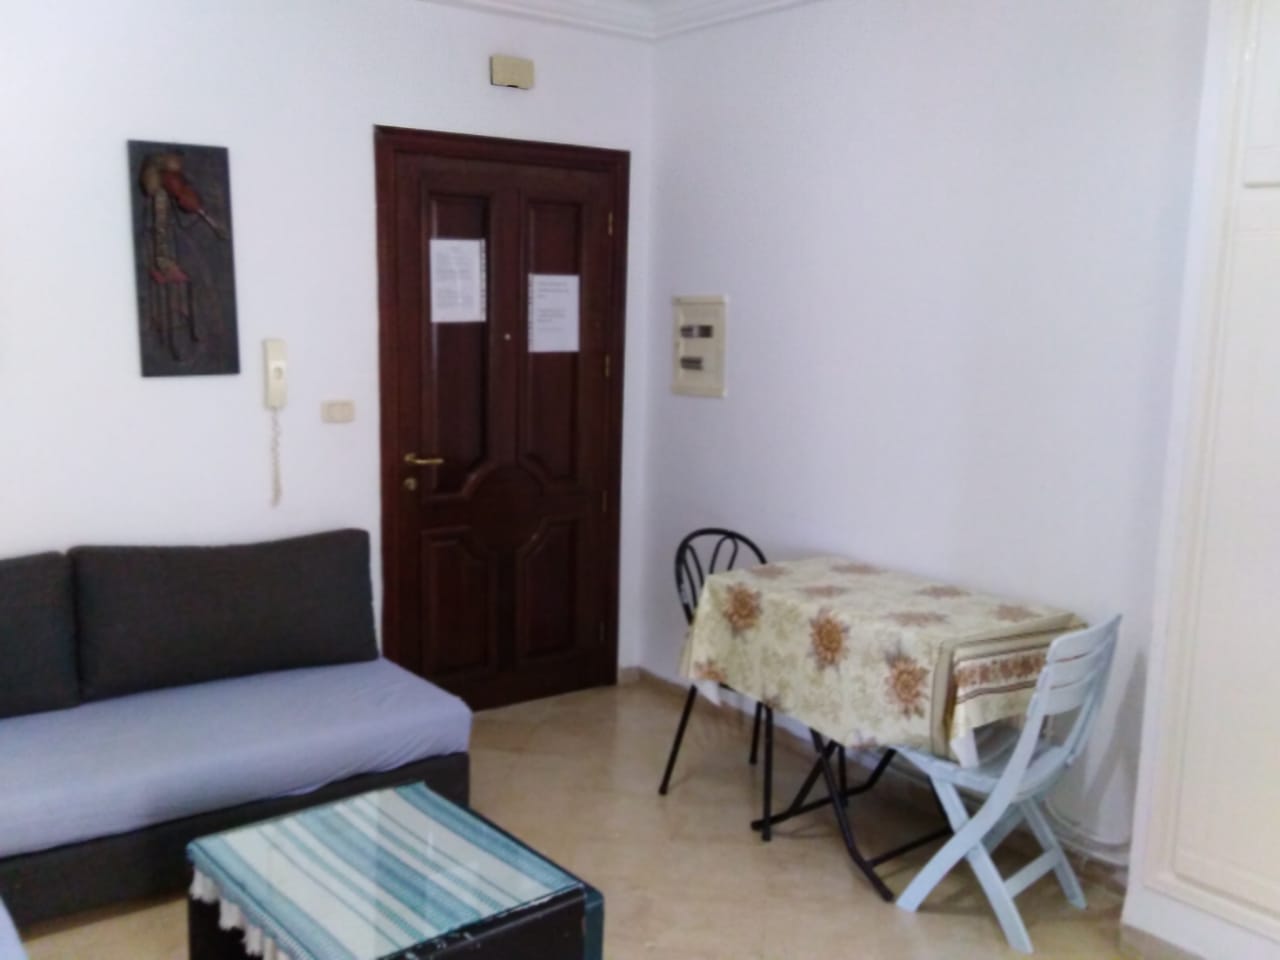 Location vacances Appart. 2 pièces Appartement meublé par jour Ain Zaghouan